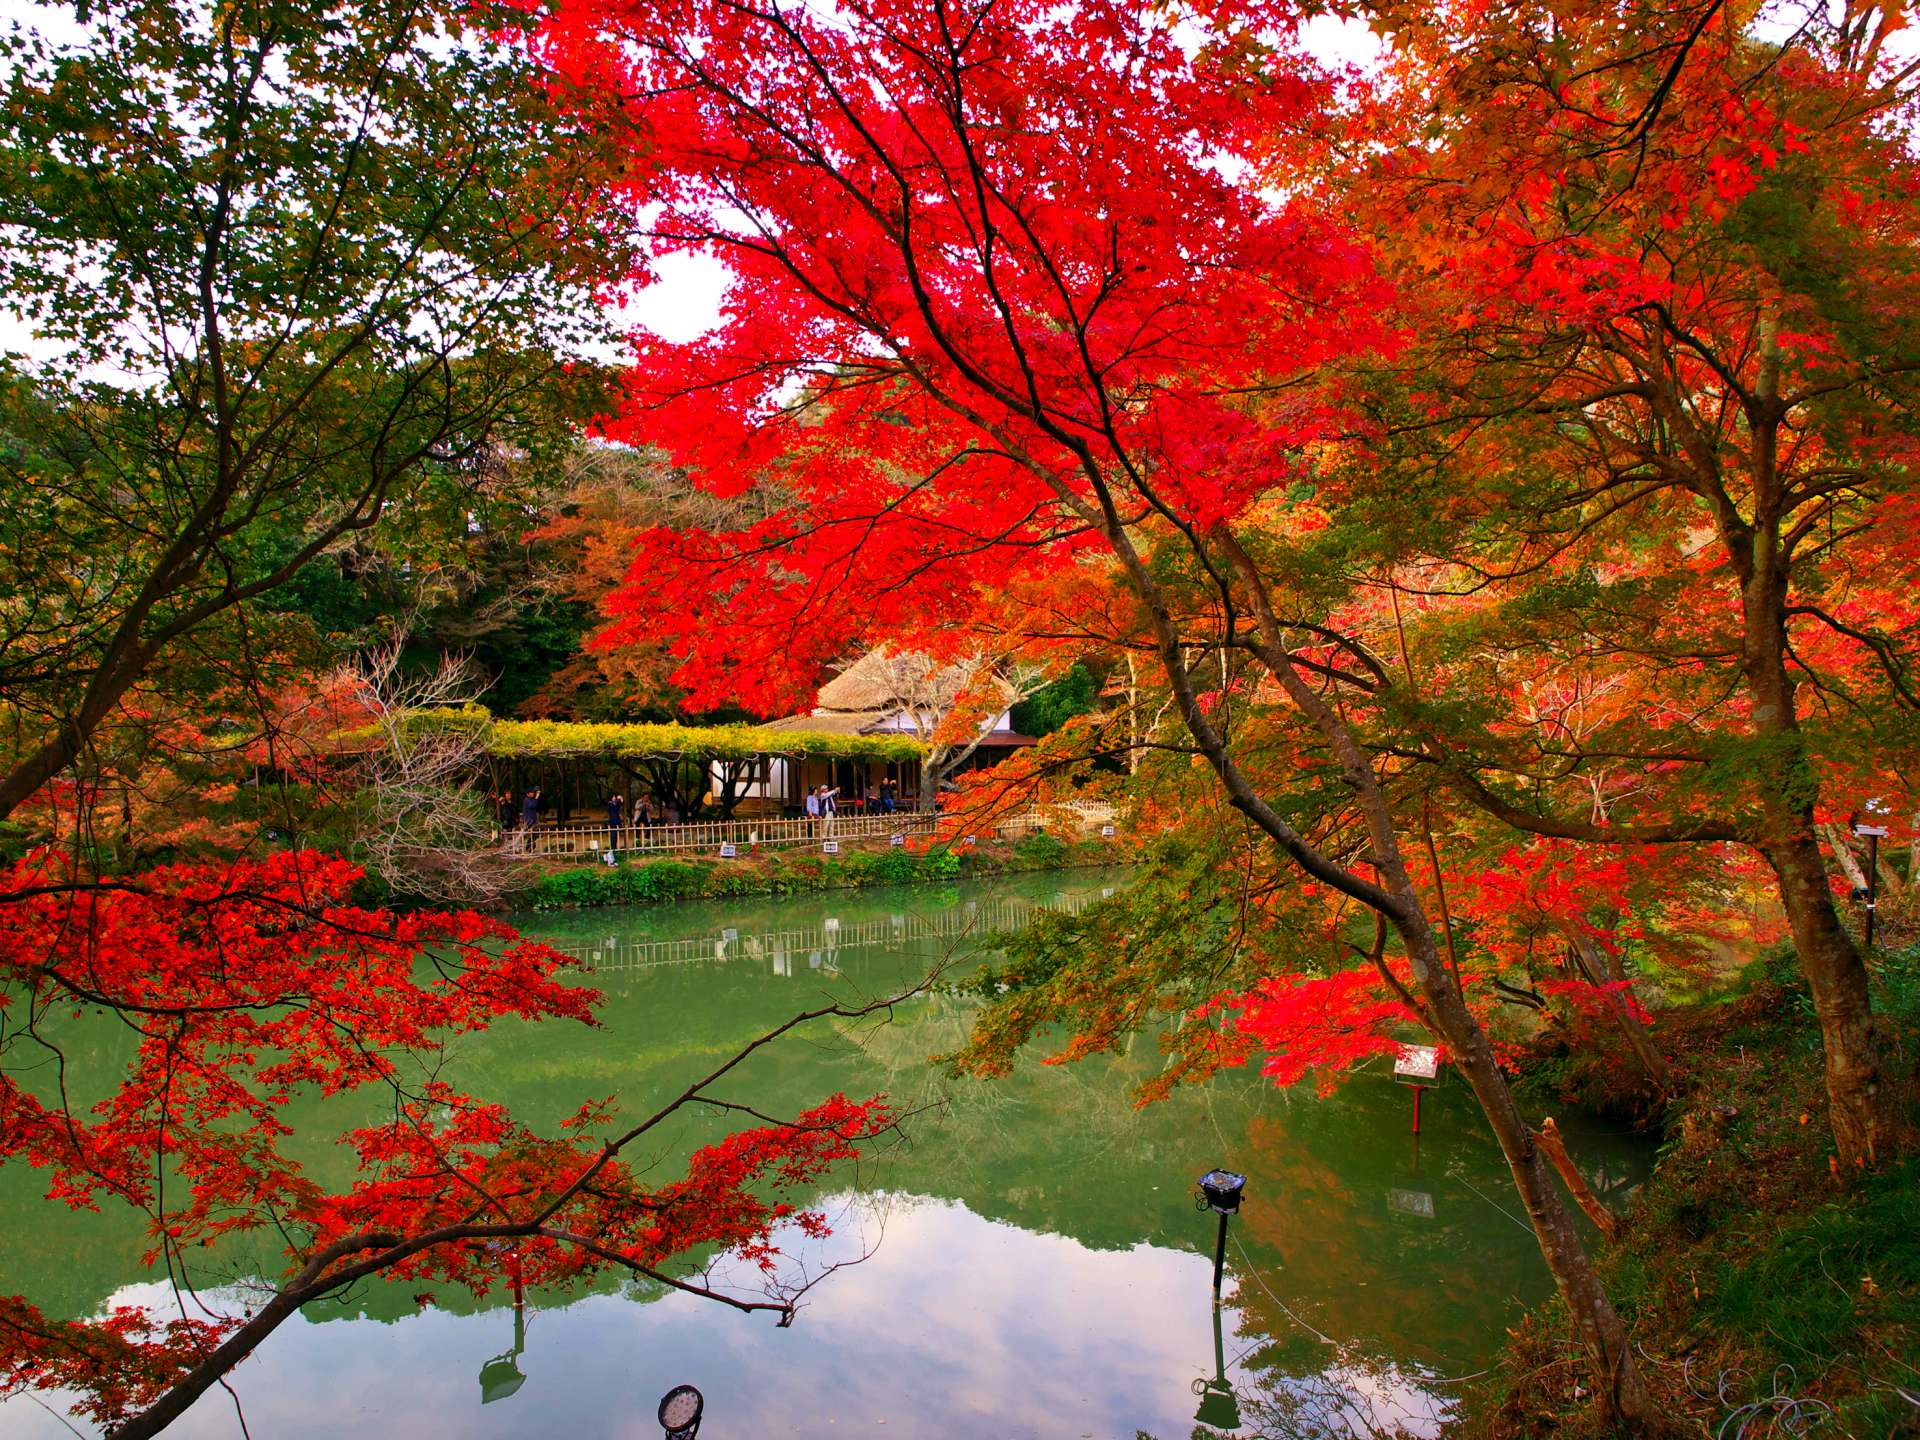 日本赏枫 观赏枫叶的最佳时期在11月的必看红叶景点总整理 好运日本行